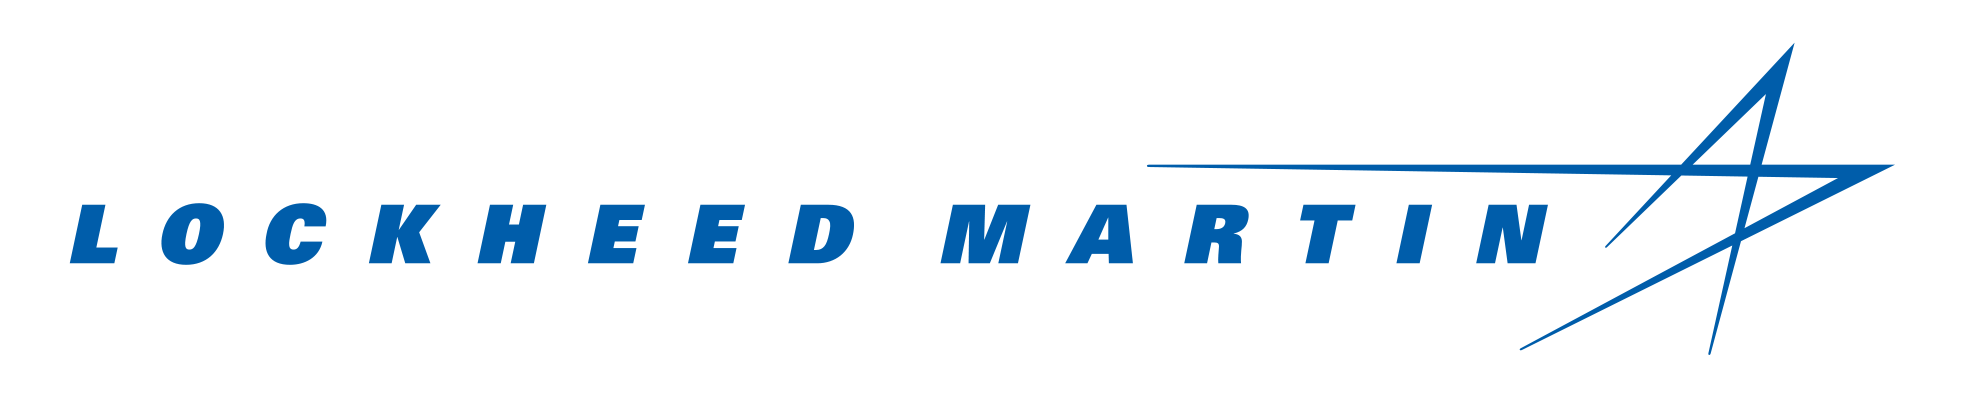 Lockheed Martin CanadaLogo